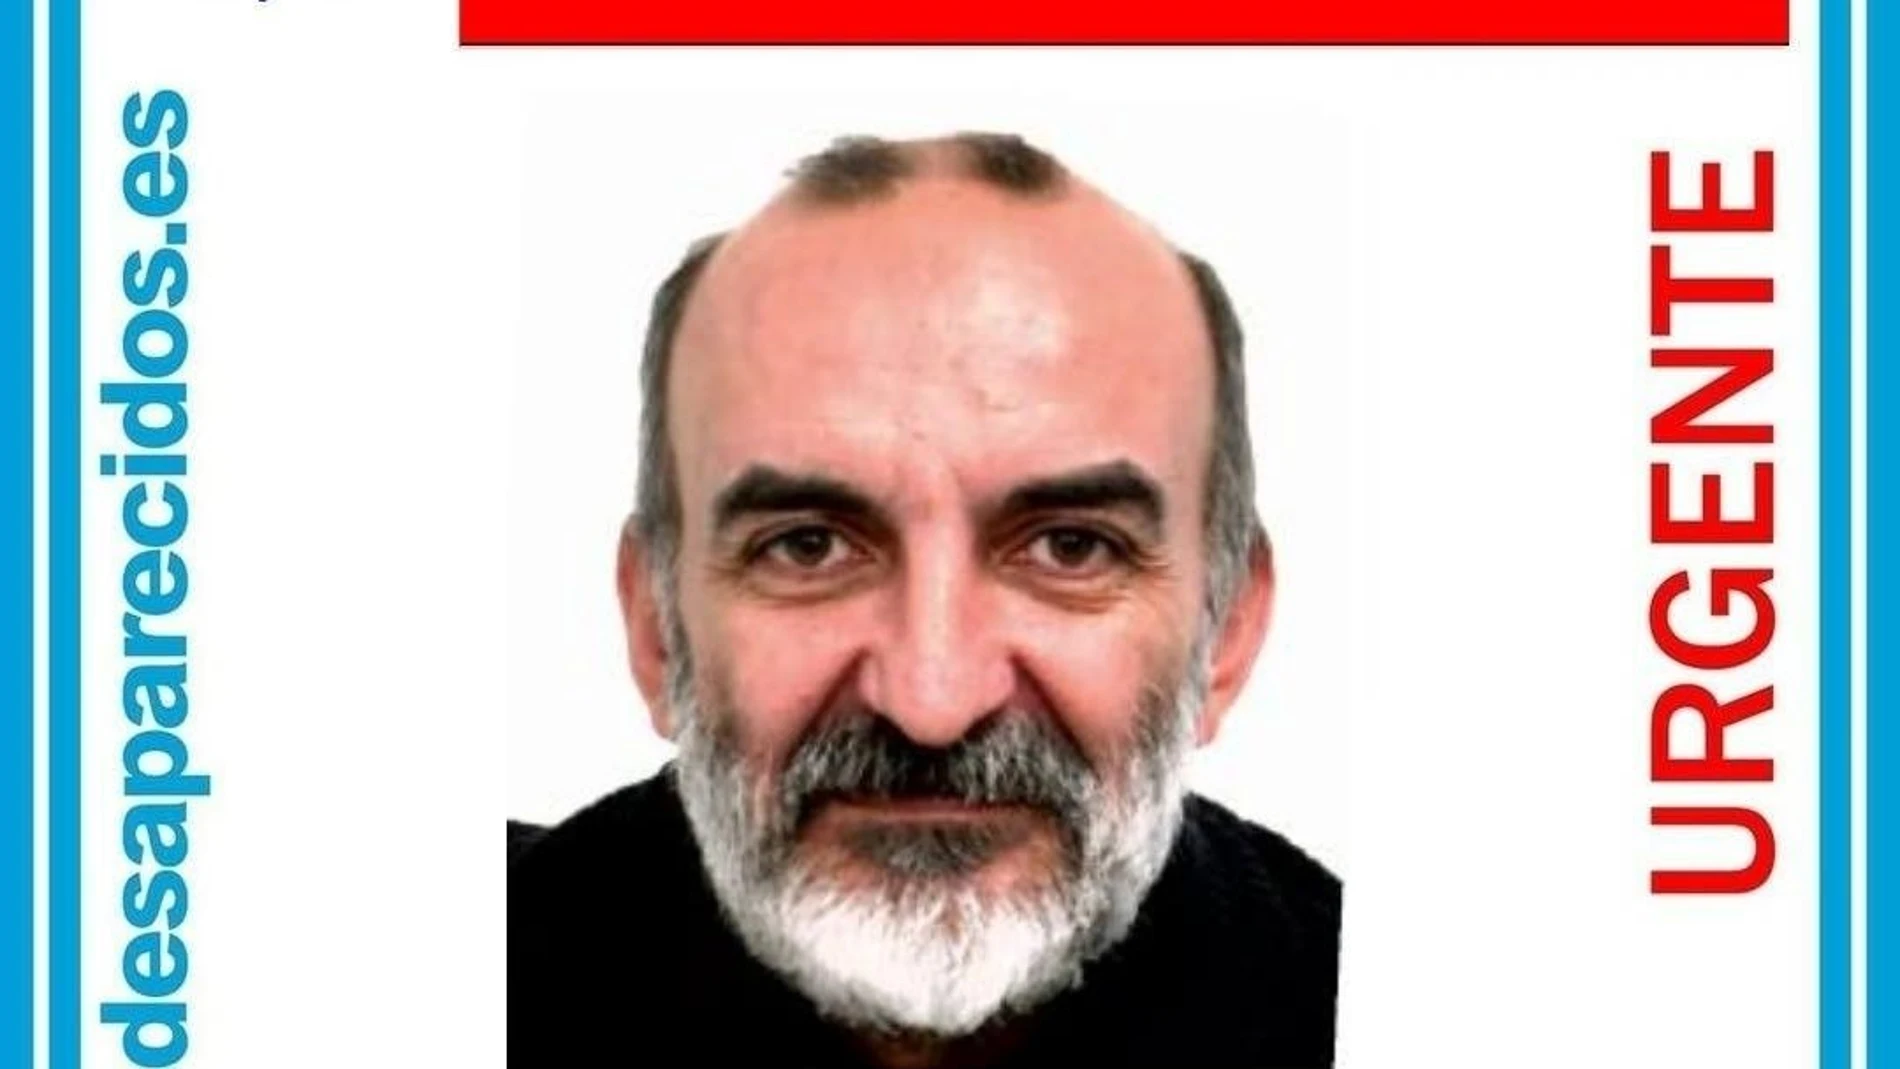 Cartel de búsqueda de José Manuel Calvo Ortega.SOS DESAPARECIDOS26/01/2021